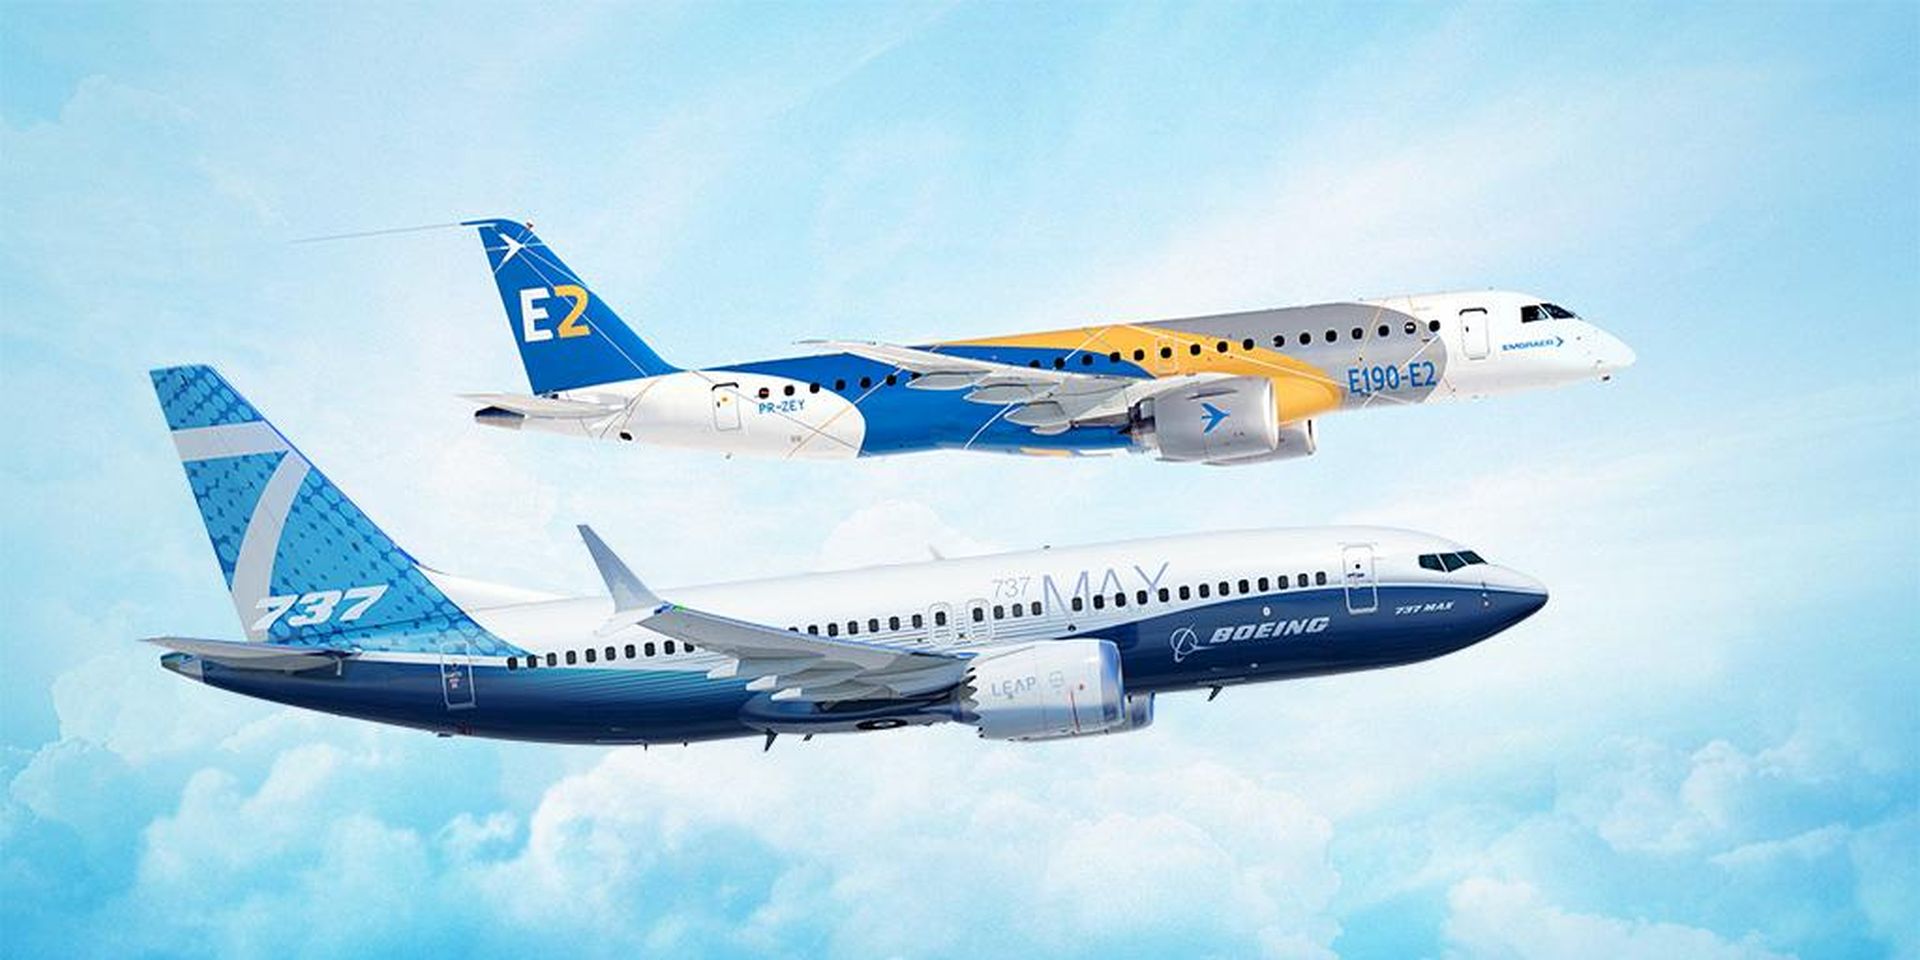 Embraer E2 a Boeing 737, vlajkové lodi v oblasti úzkotrupých letadel obou výrobců. Foto: Boeing